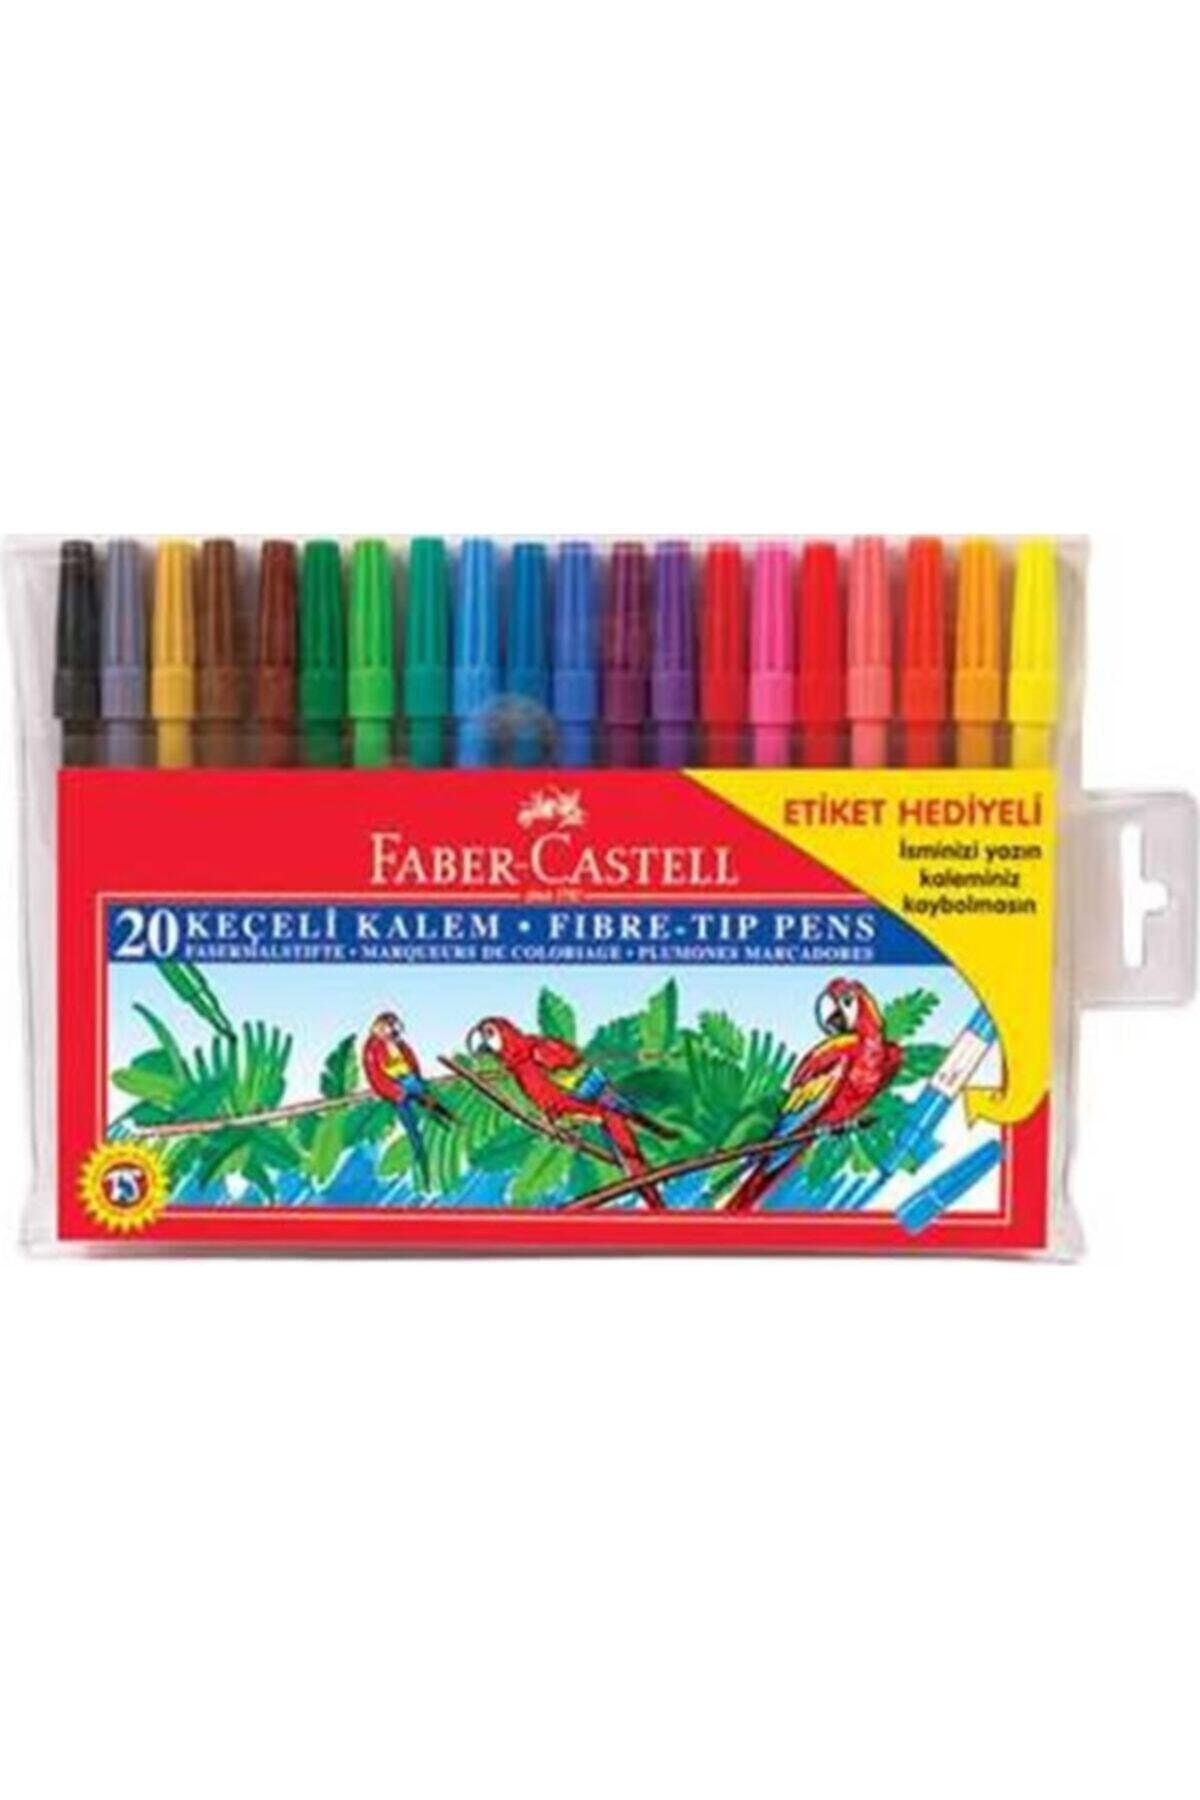 Faber Castell Yıkanabilir Keçeli Kalem 20 Renkli